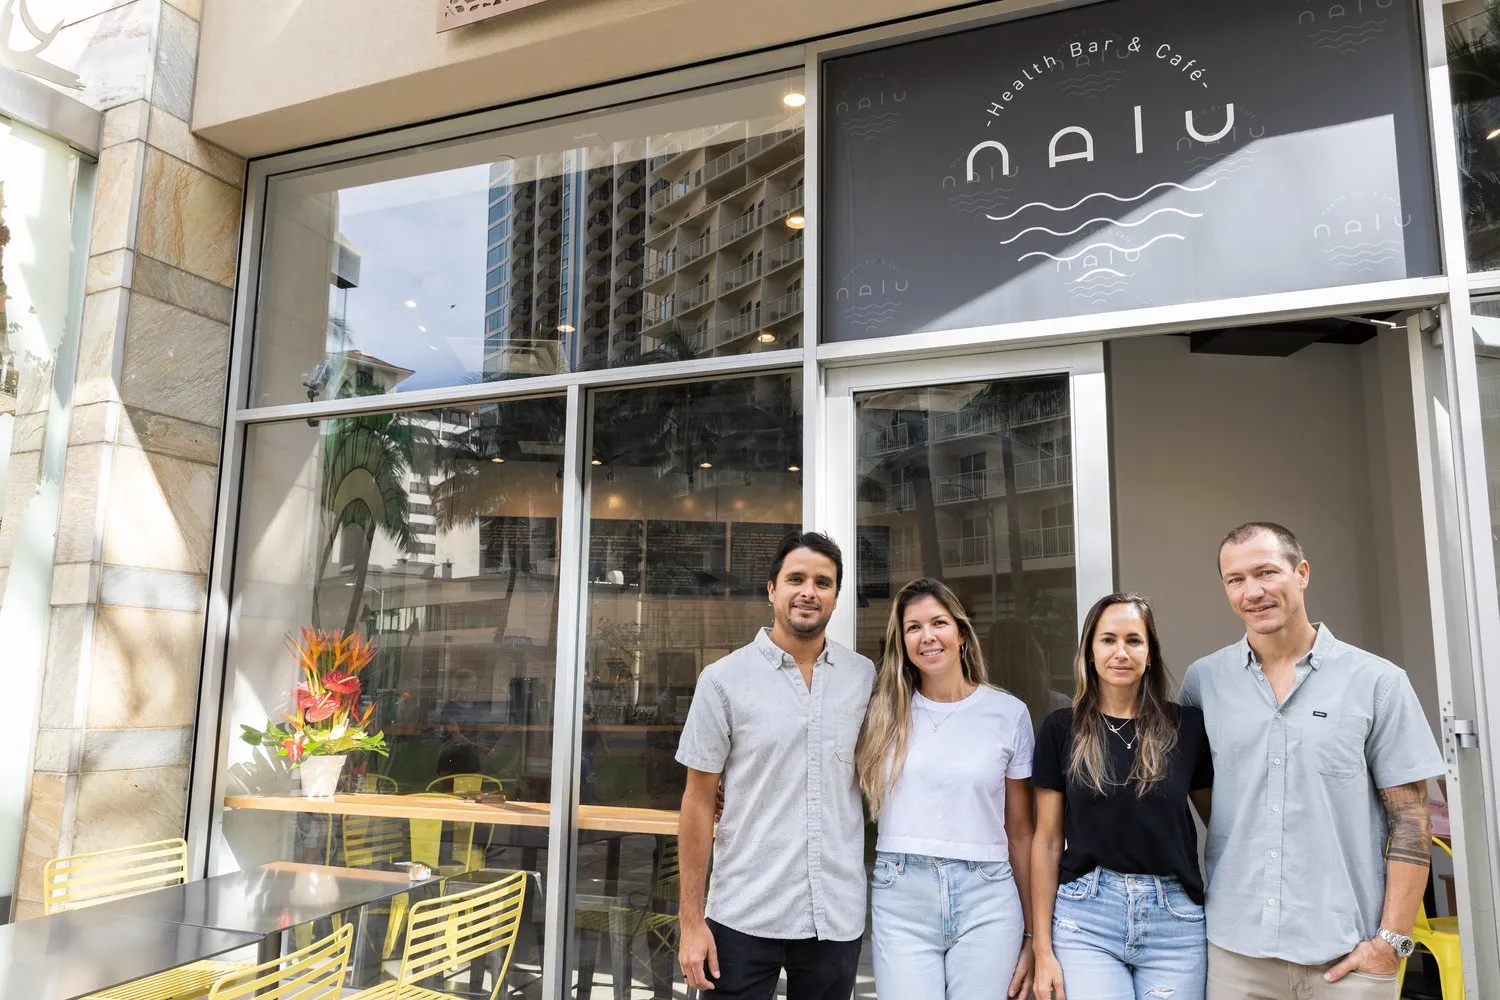 ナル ヘルスバー＆カフェ (Nalu Health Bar & Café)